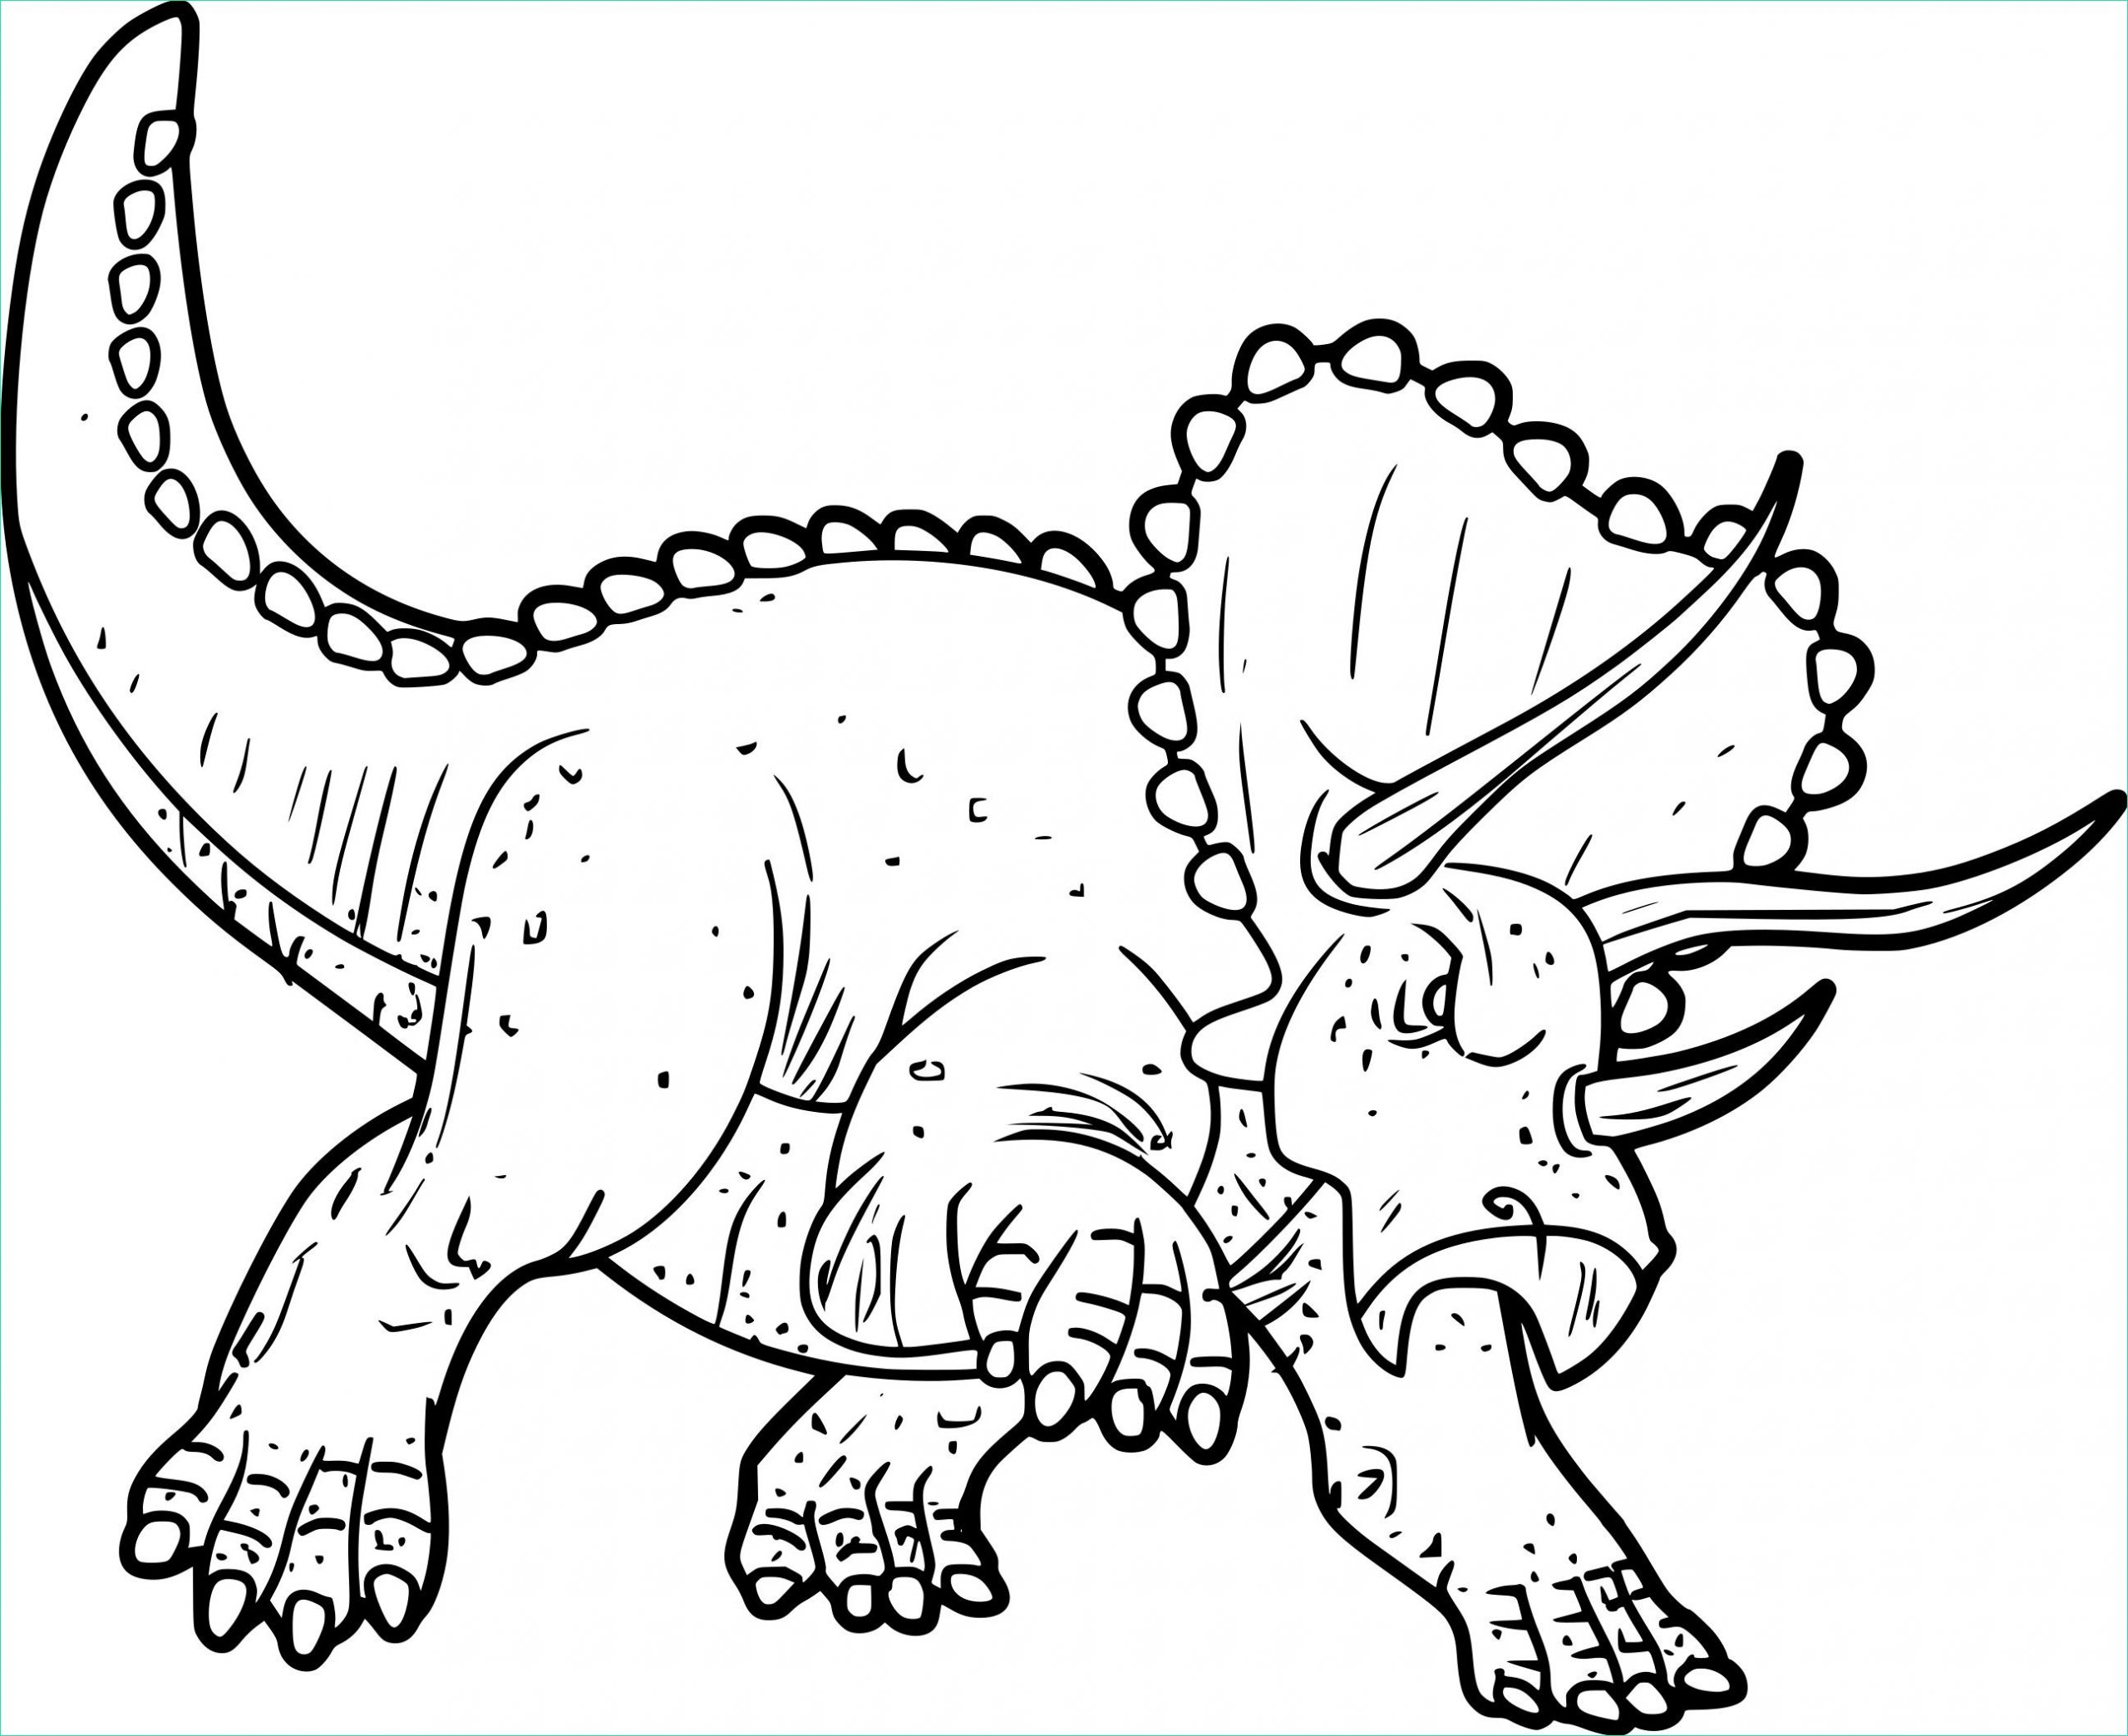 Dessin à Imprimer Dinosaure Impressionnant Collection Coloriage Dinosaure Triceratops à Imprimer Sur Coloriages